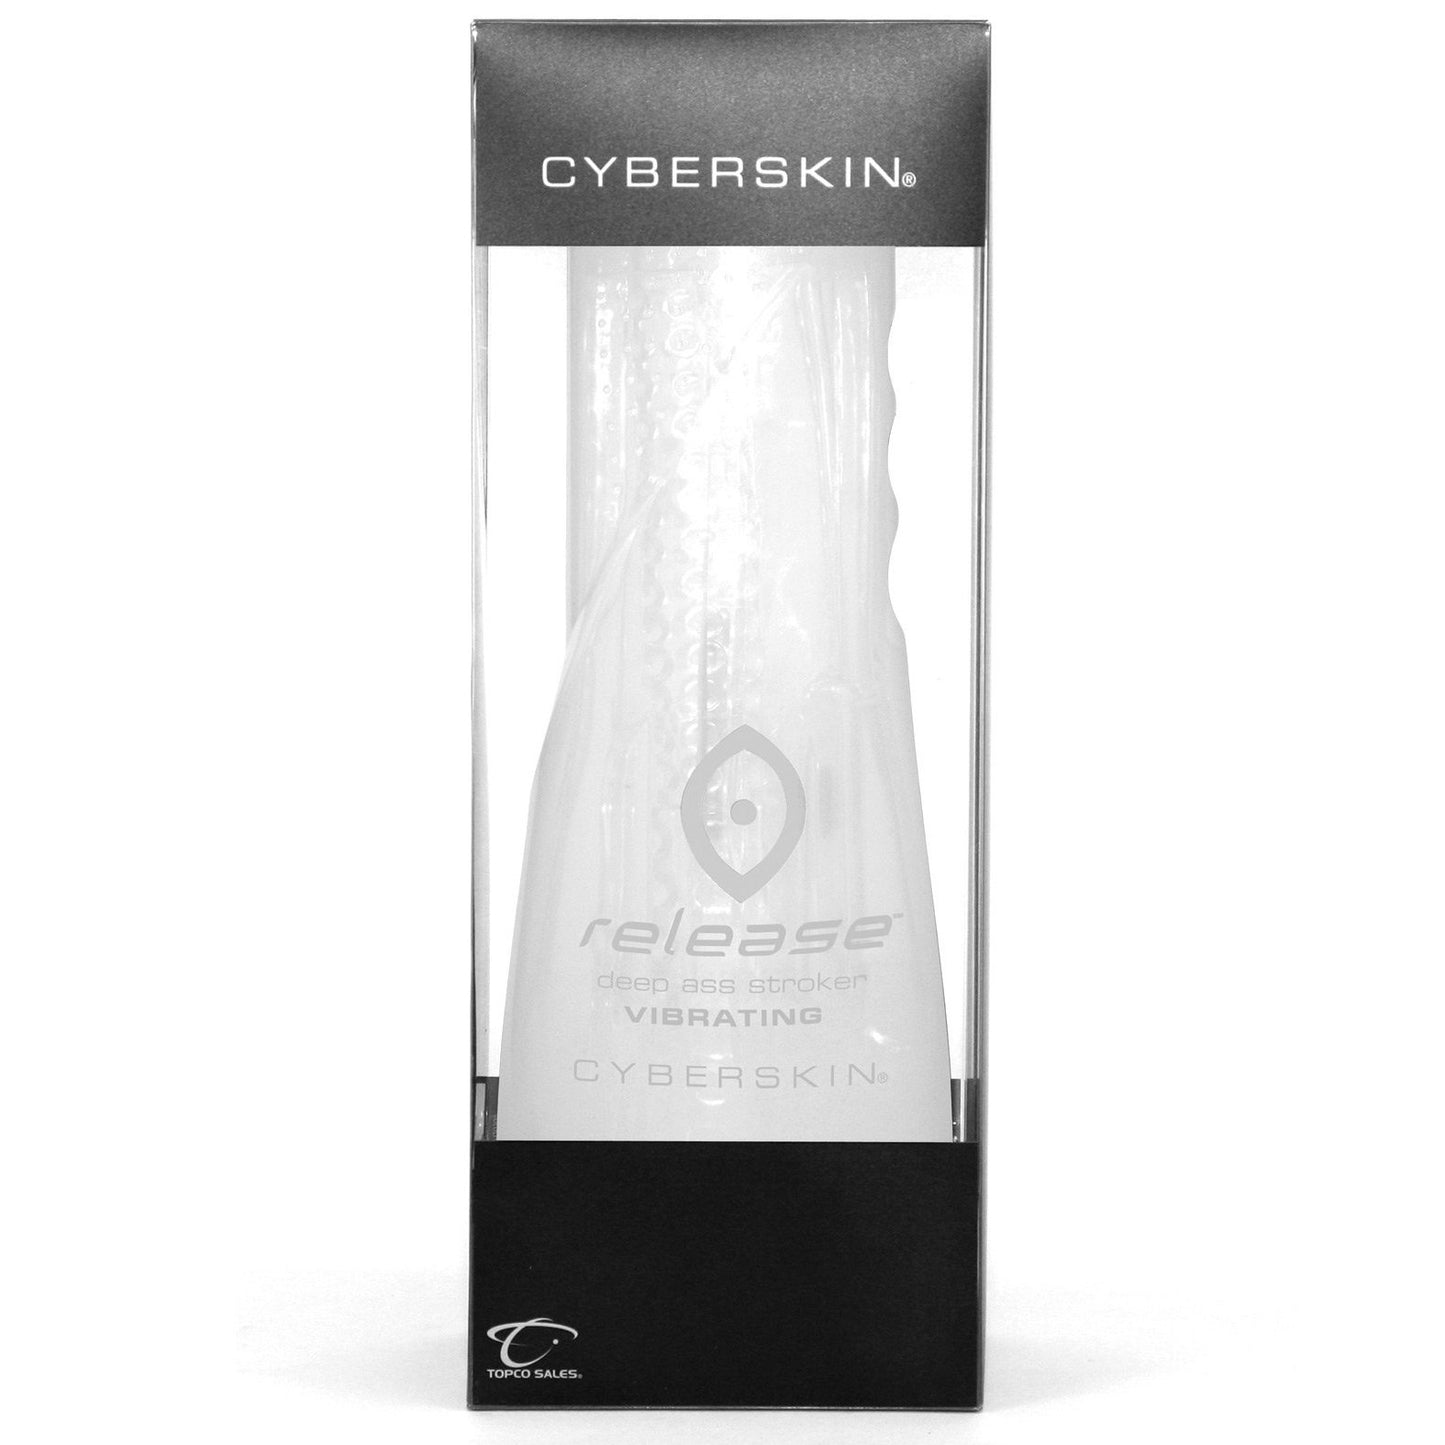 Cyberskin Release Tight Ass Stroker Clear